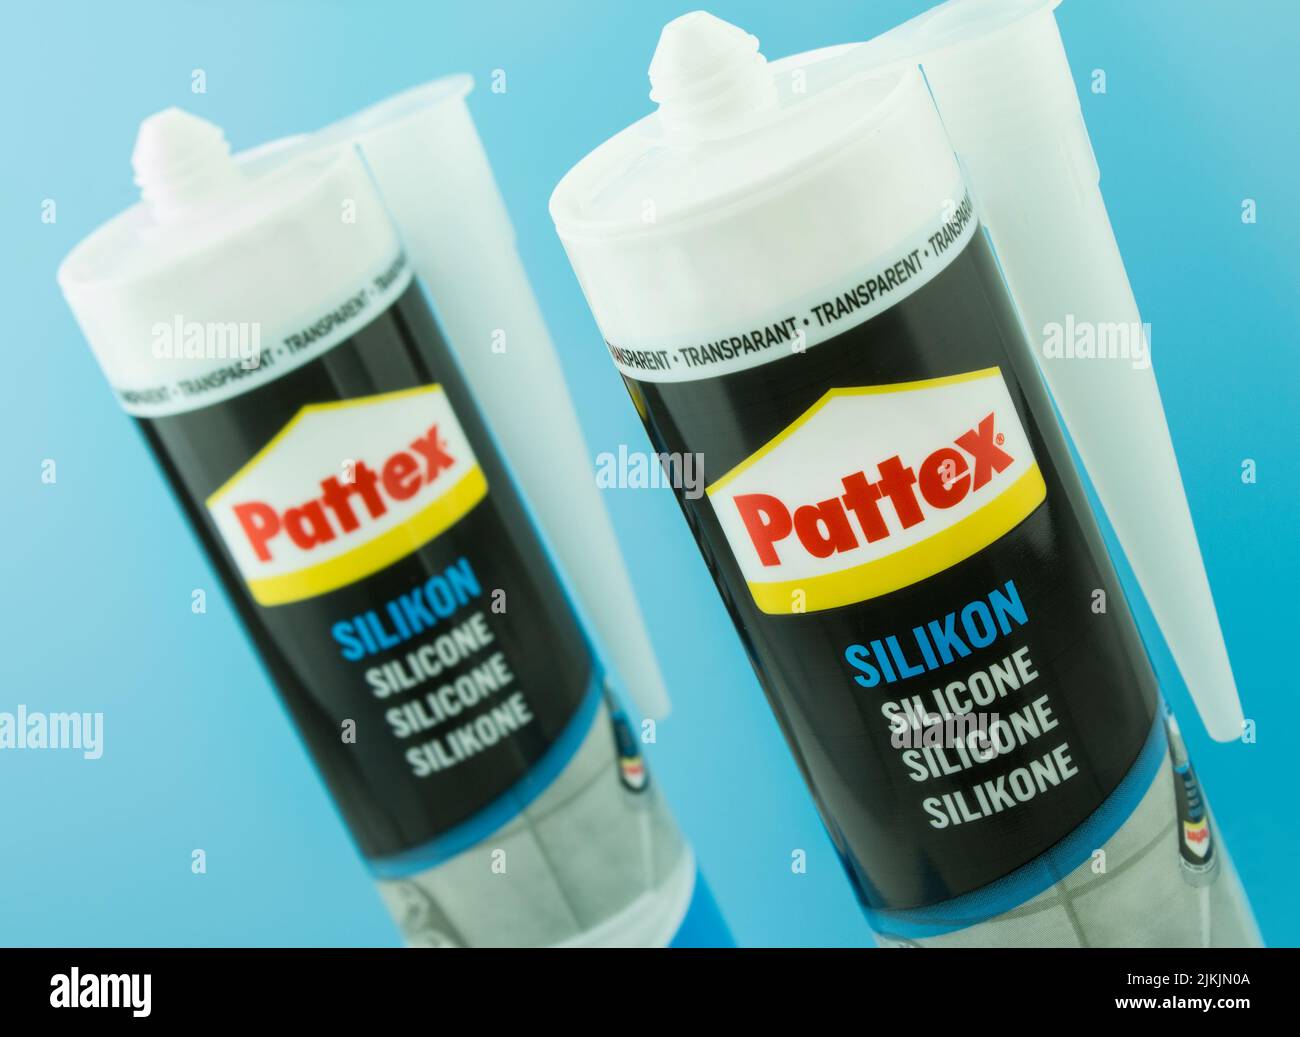 Pattex Silikon von Henkel auf blauem Hintergrund Stock Photo